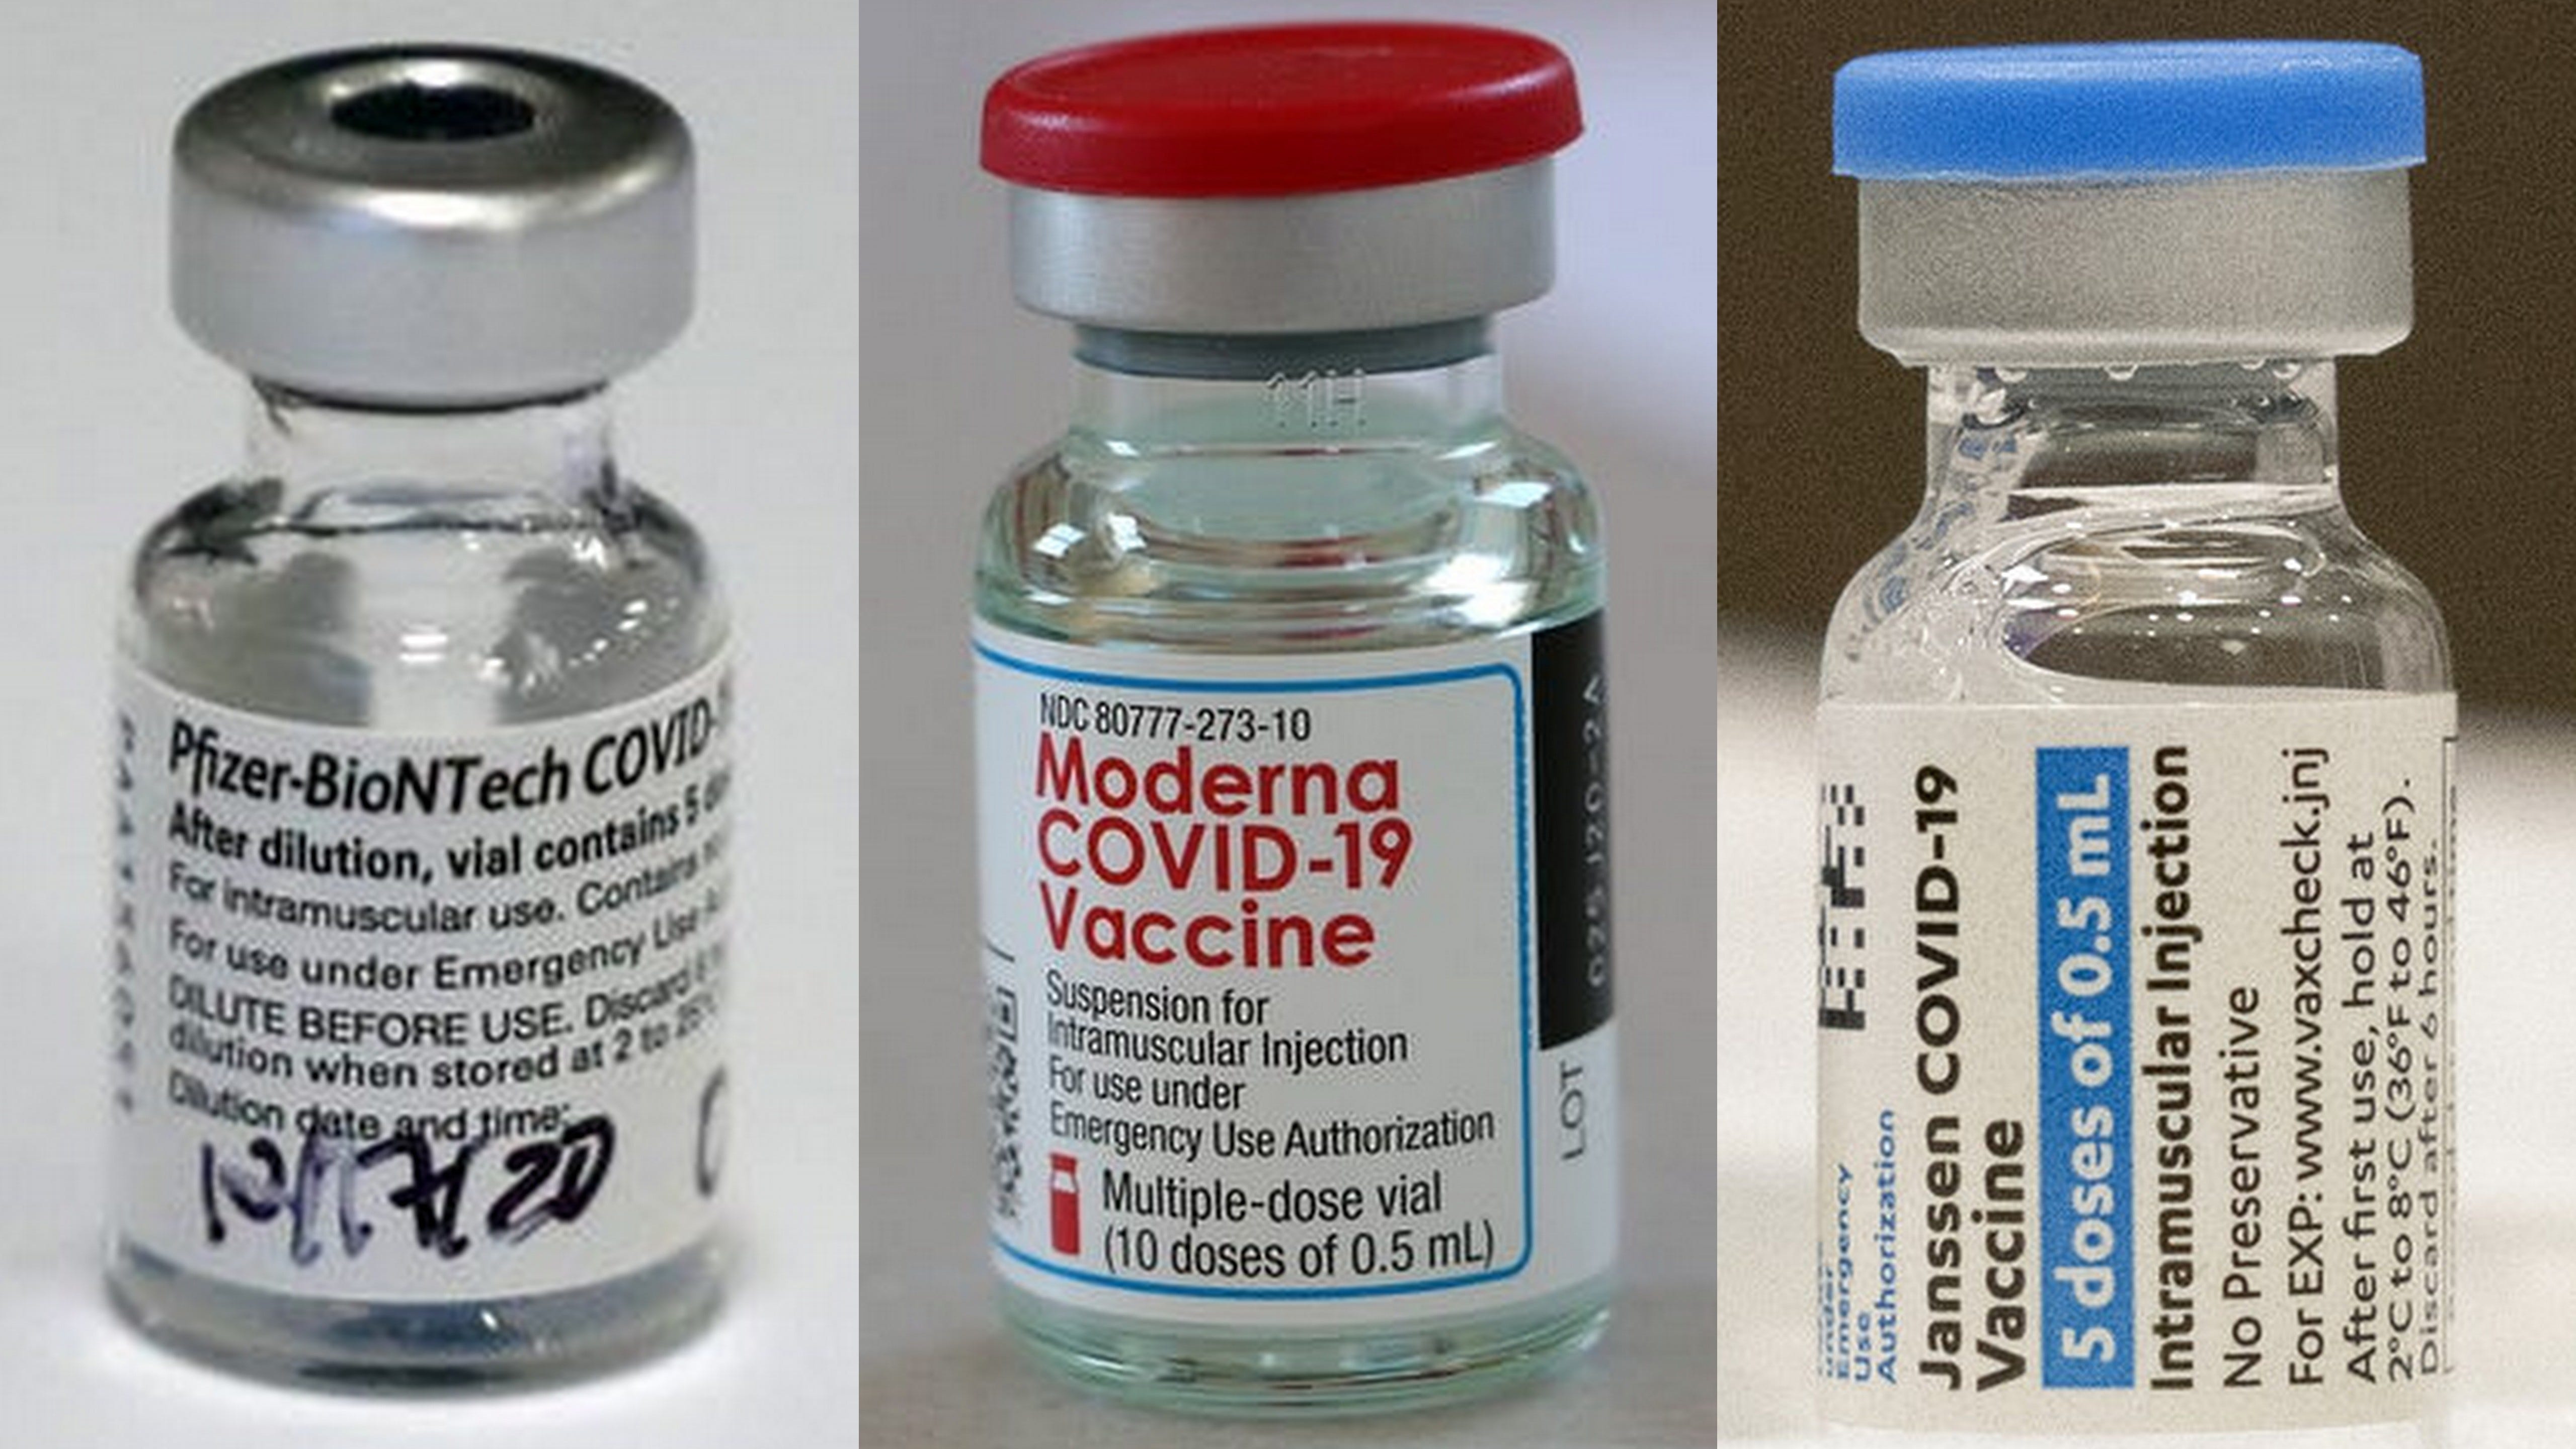 Three COVID-19 vaccines compared: Pfizer, Moderna, Johnson & Johnson